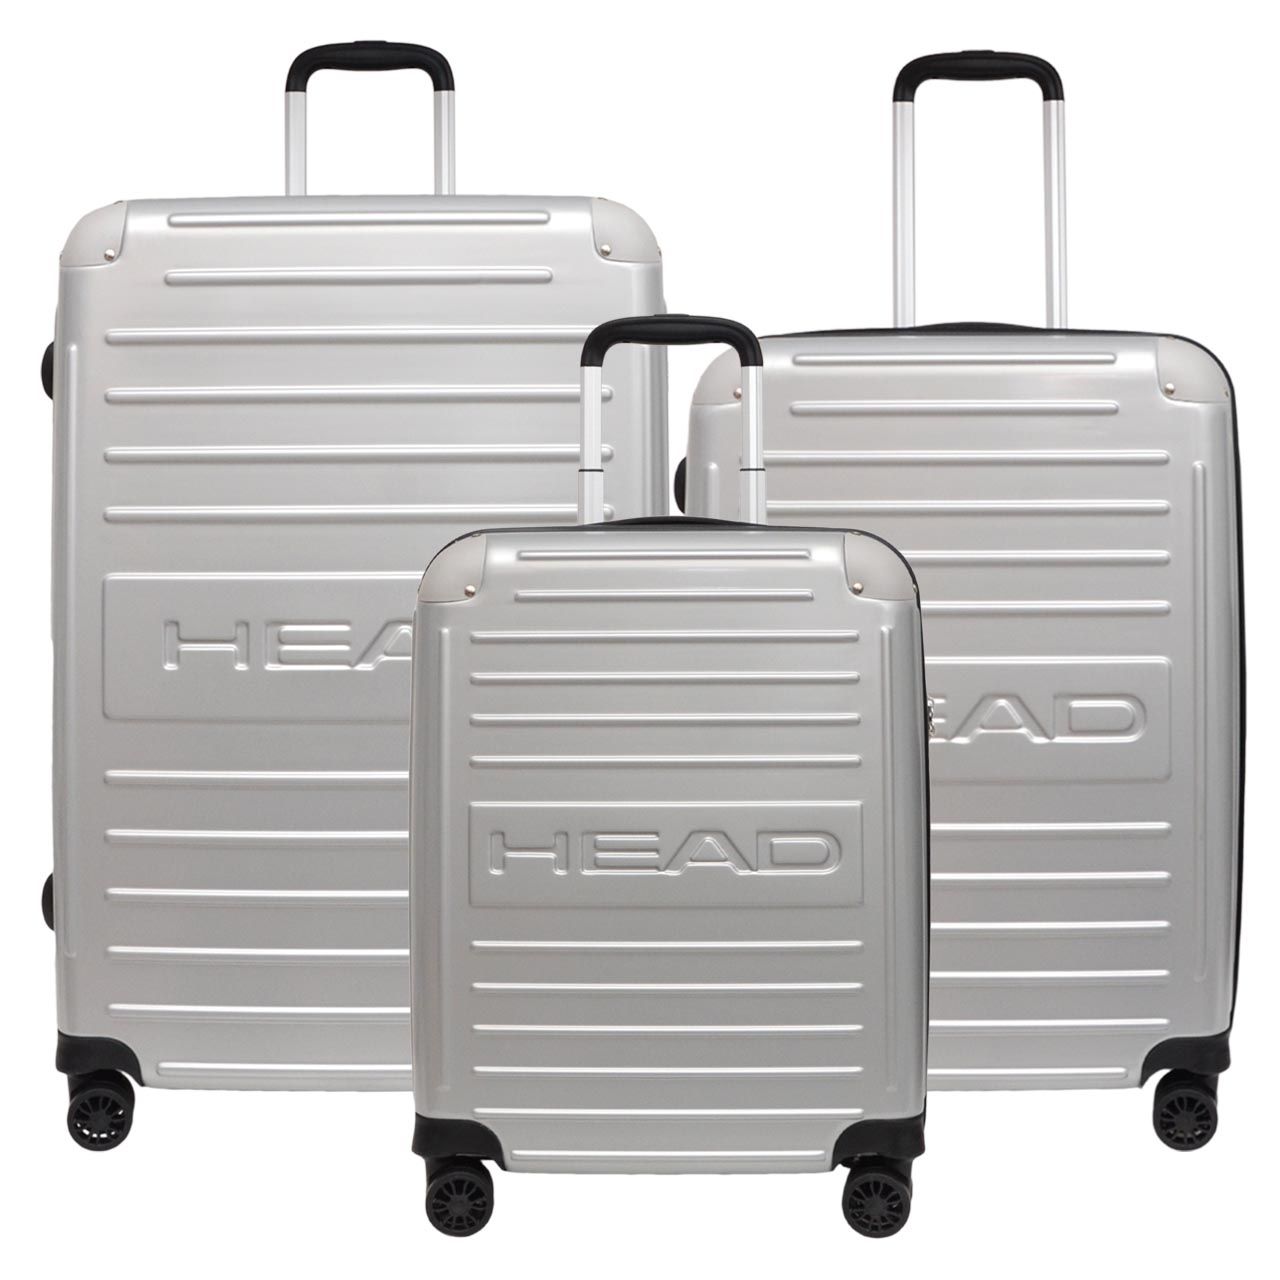 مجموعه سه عددی چمدان هد مدل HL 001 -  - 1